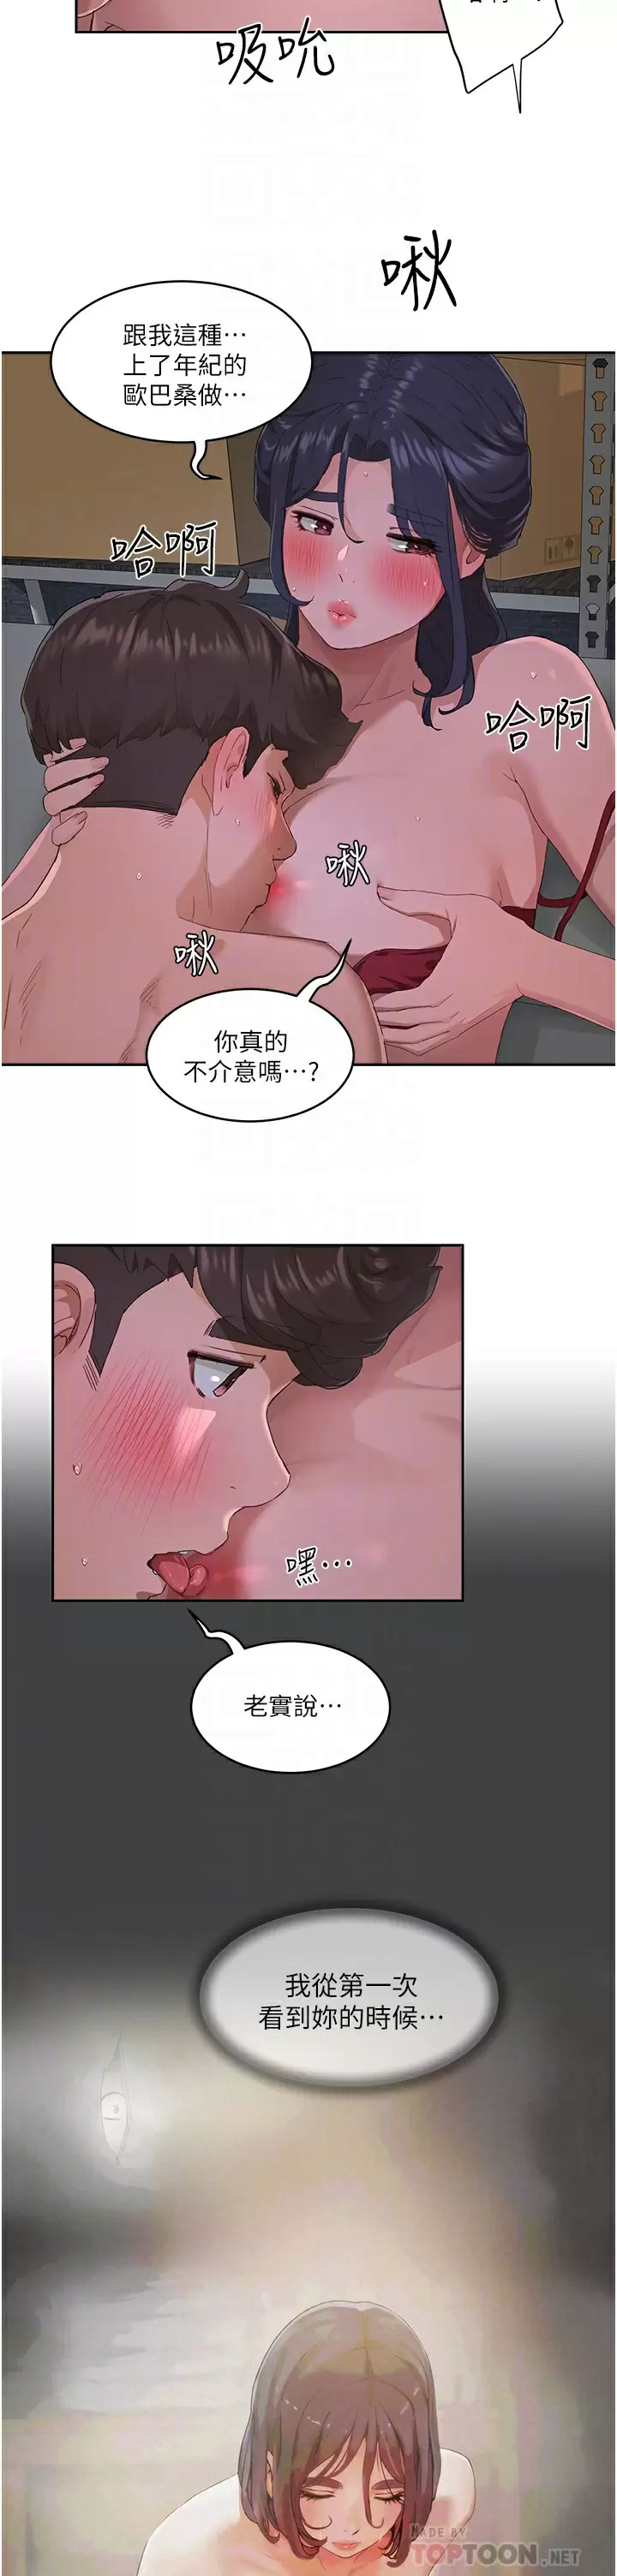 韩国污漫画 夏日深處 第32话 滚烫多汁的鲍鱼 12